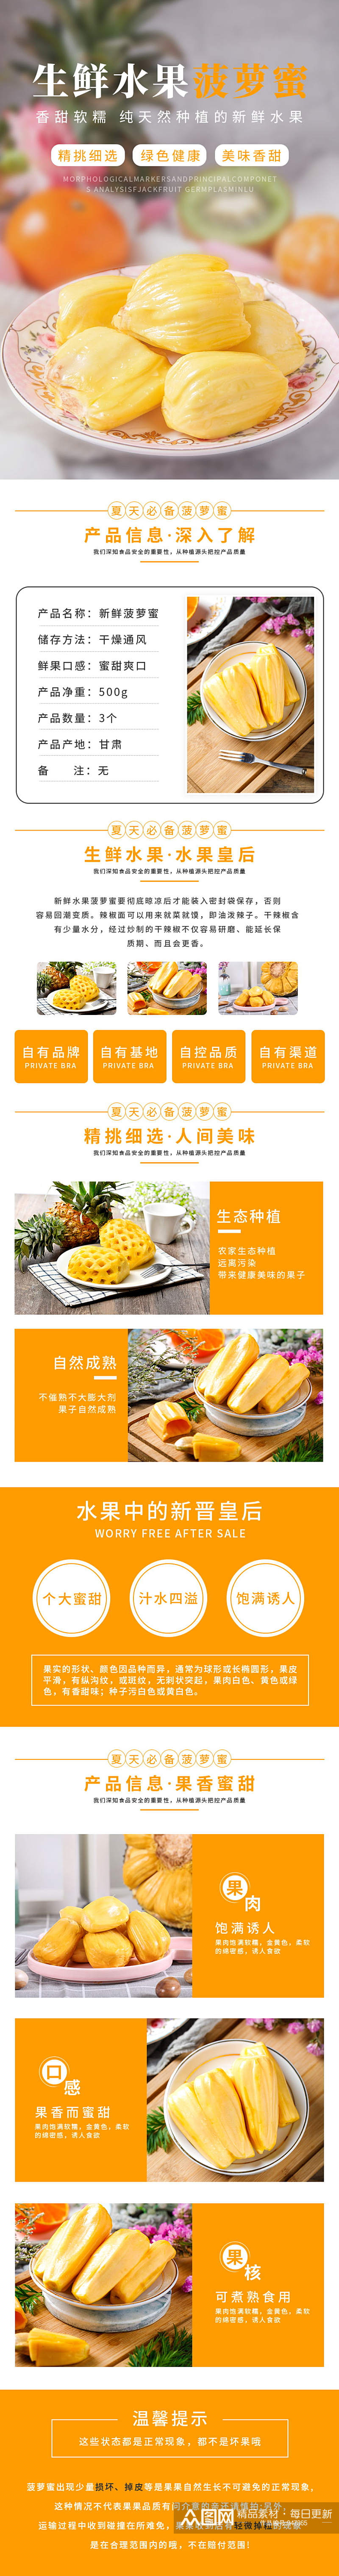 黄色生鲜水果菠萝蜜详情页素材